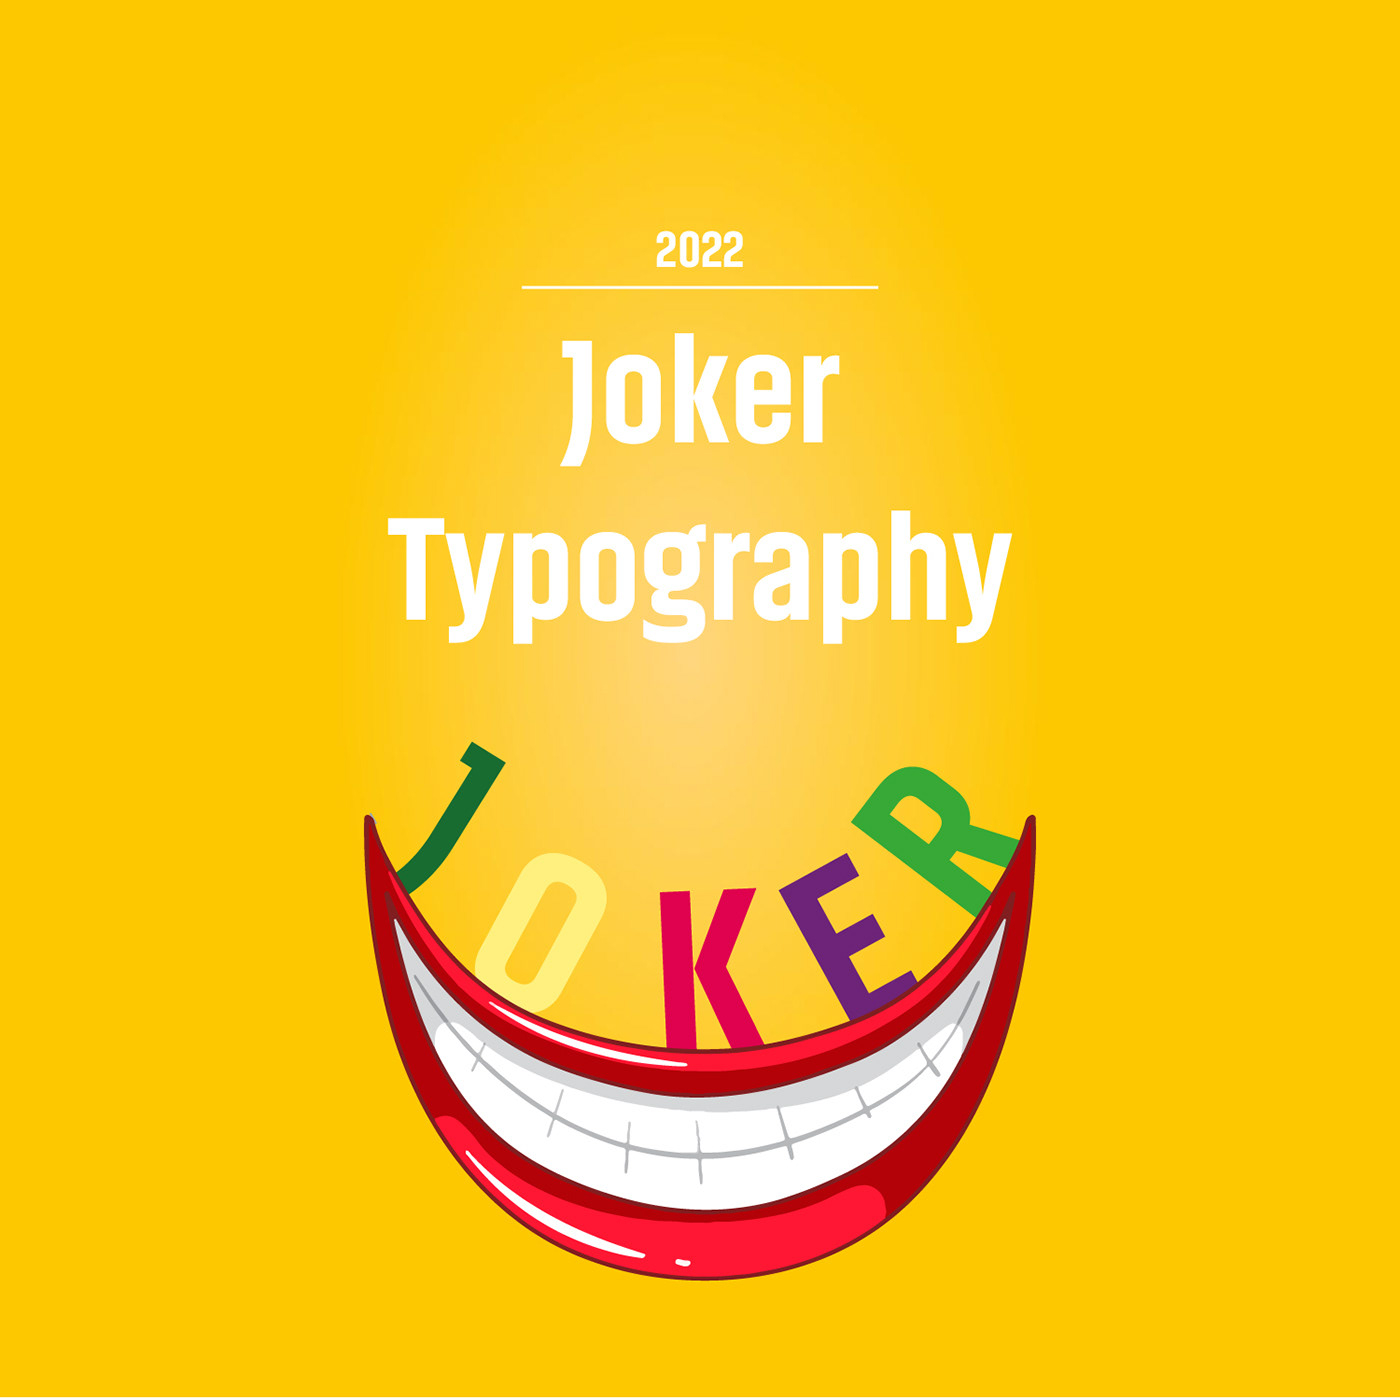 Adobe Portfolio design designer designs graphics typo typographic Typographie typography   typography design